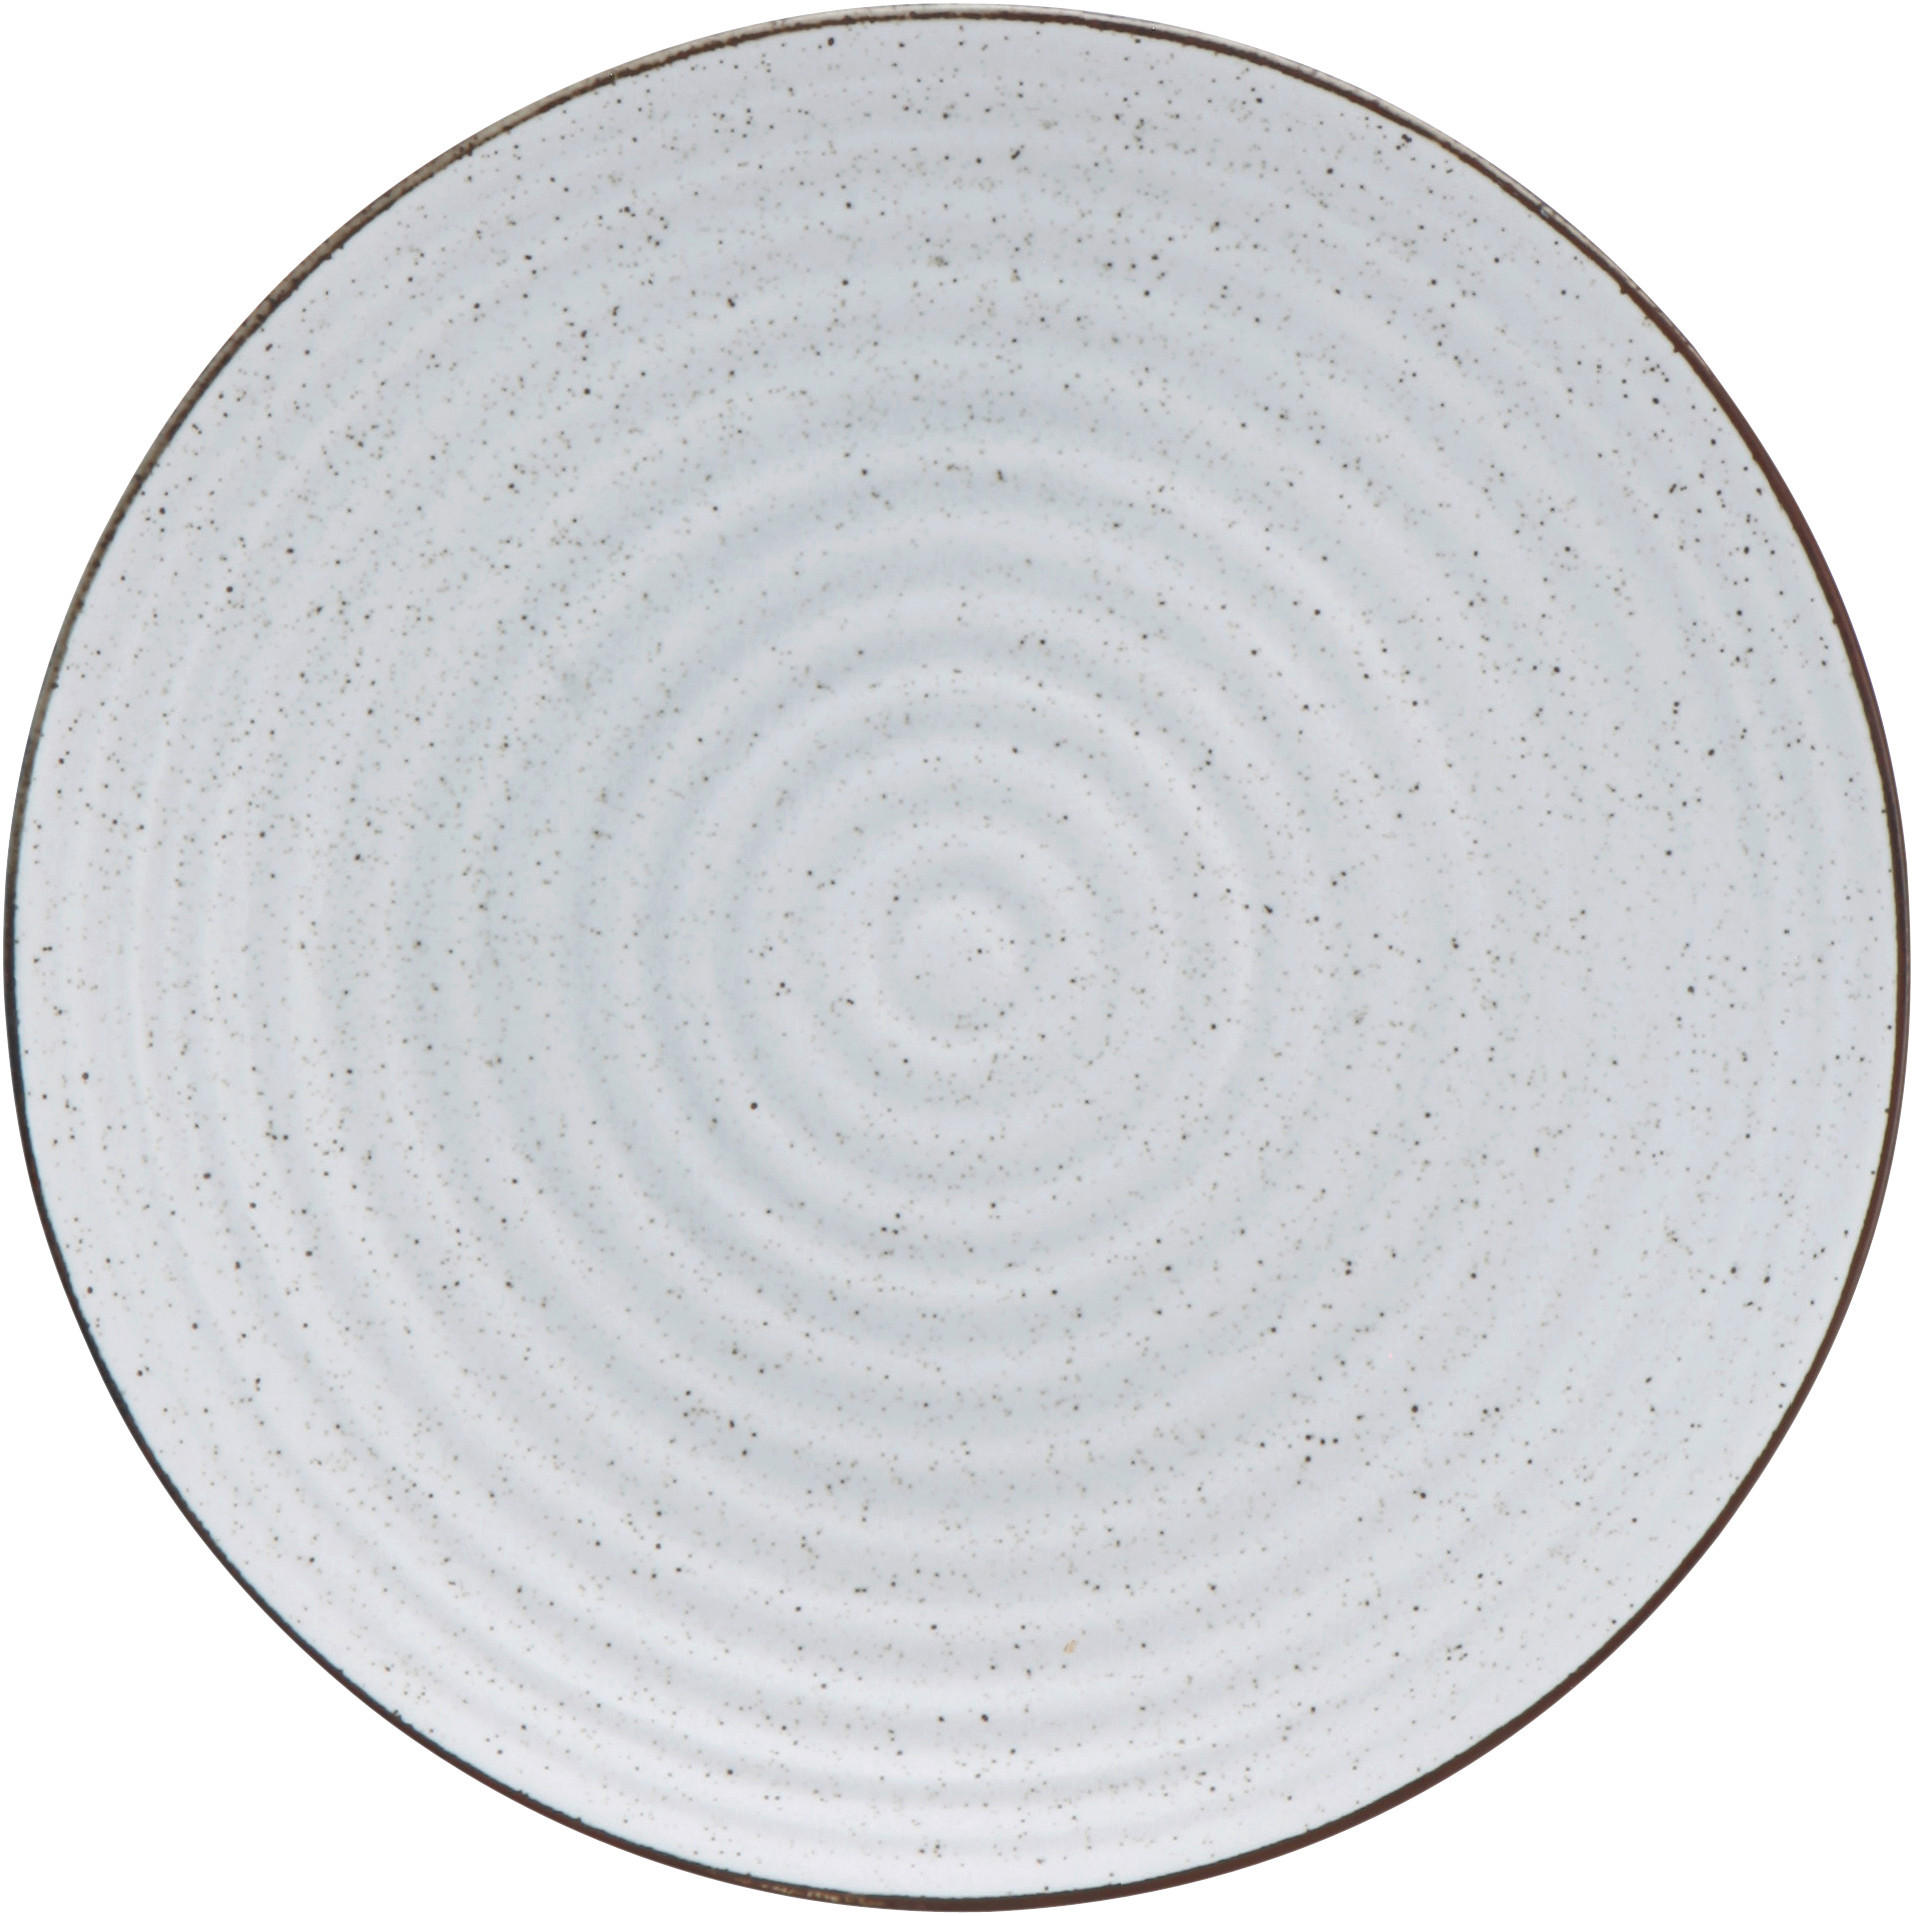 Porzellan  DESSERTTELLER  rund  - Beige, Design, Keramik (22,5cm) - Landscape